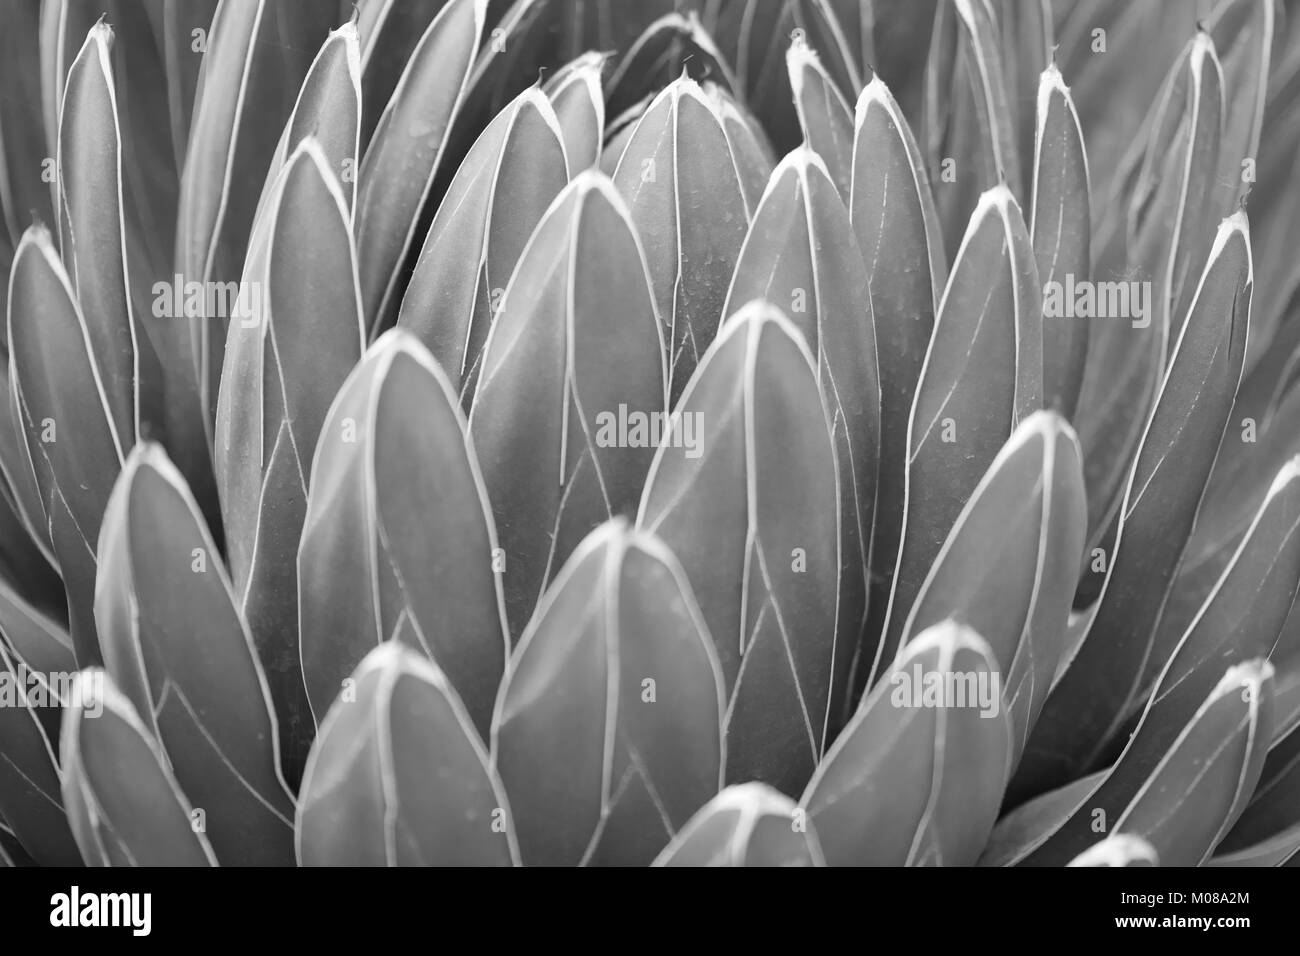 Agave victoriae reginae deja textura del fondo en blanco y negro Foto de stock